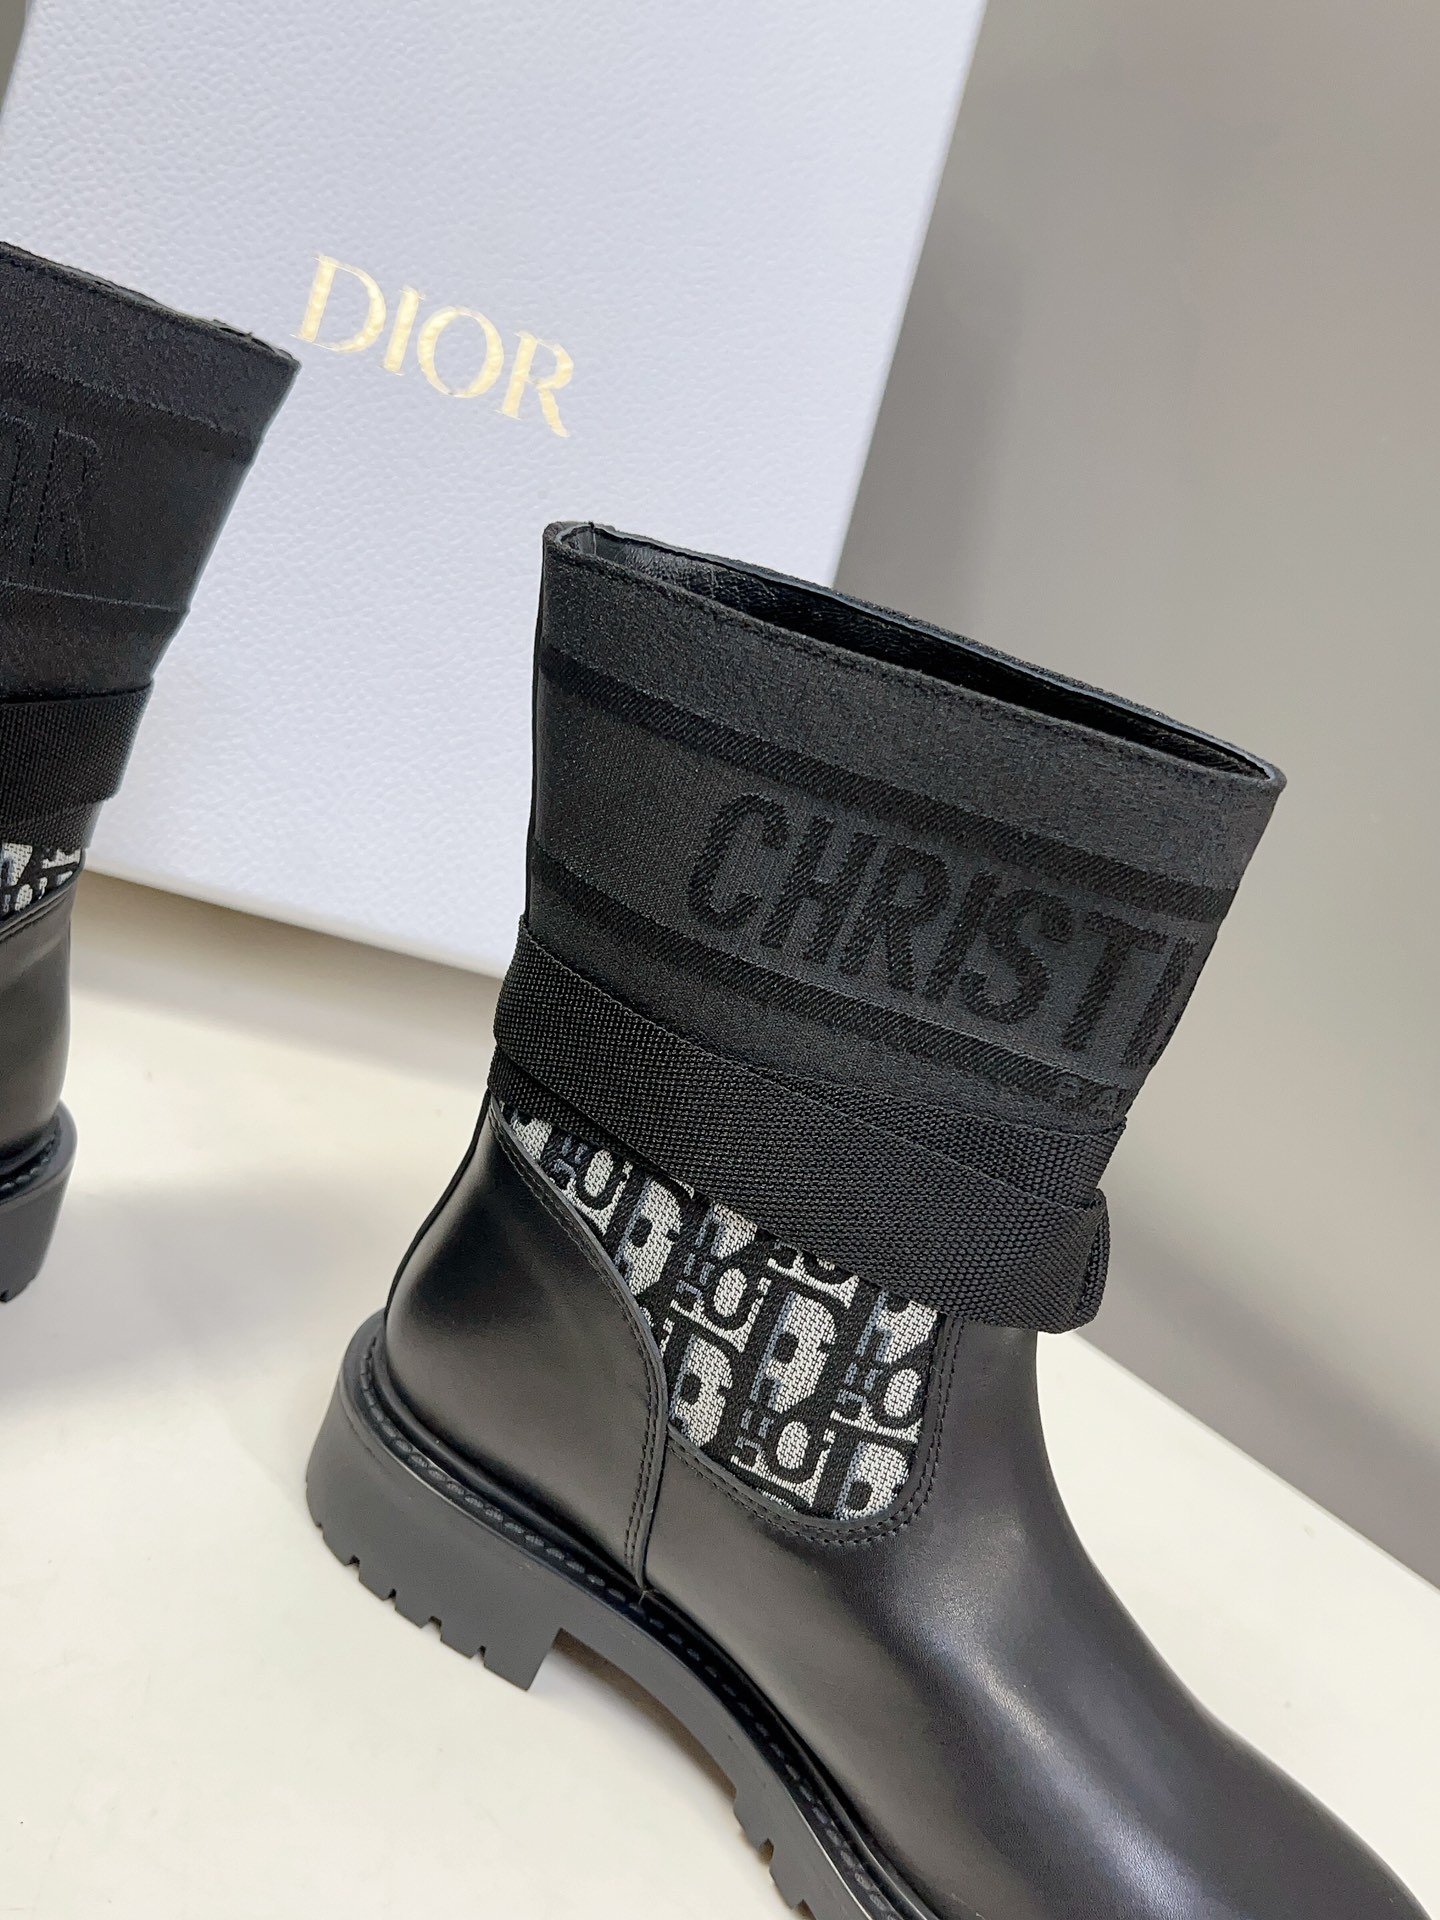 Dior迪奥秋冬经典骑士靴超多明星网红种草时尚与潮流同时拥有可酷可帅的一款靴子不仅颜值爆棚有品牌辨识度刺